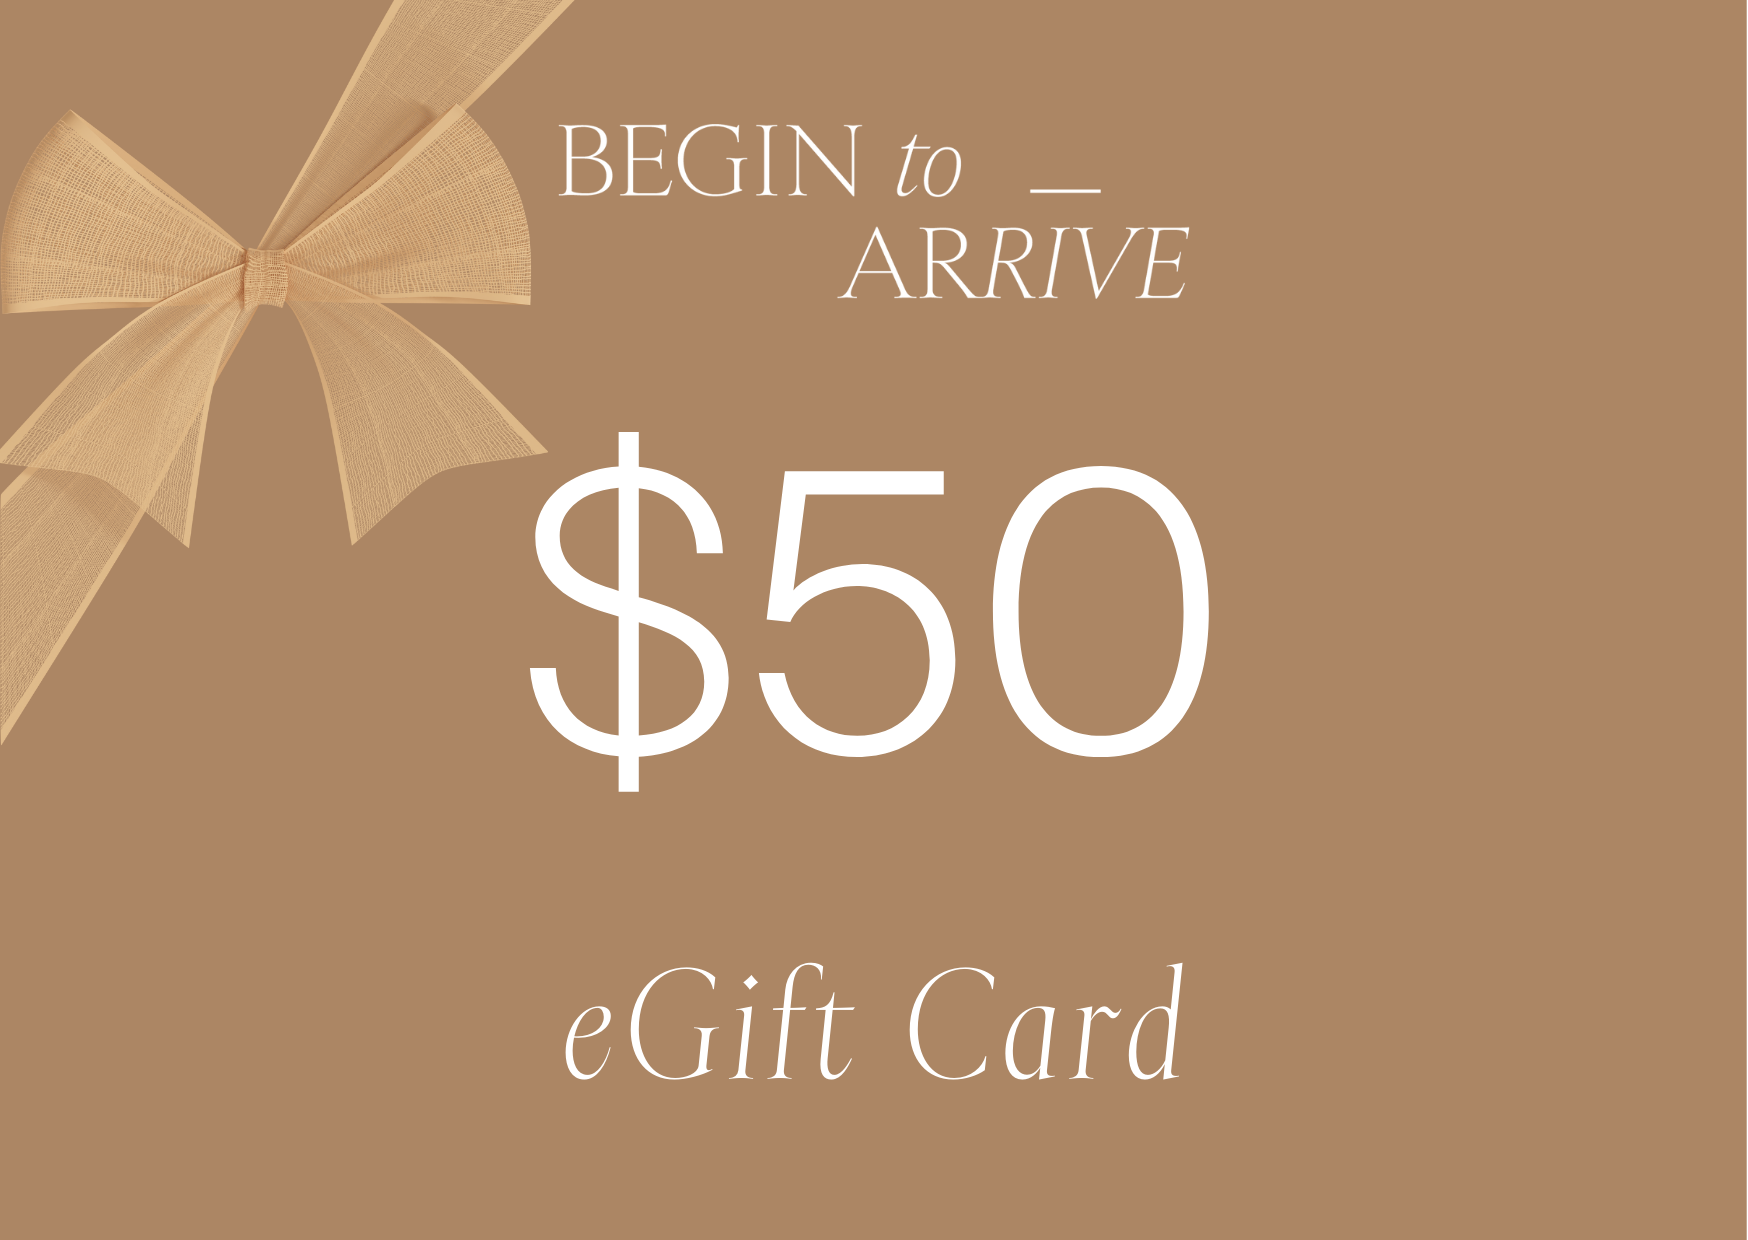 Begin To Arrive $50 eGift Card